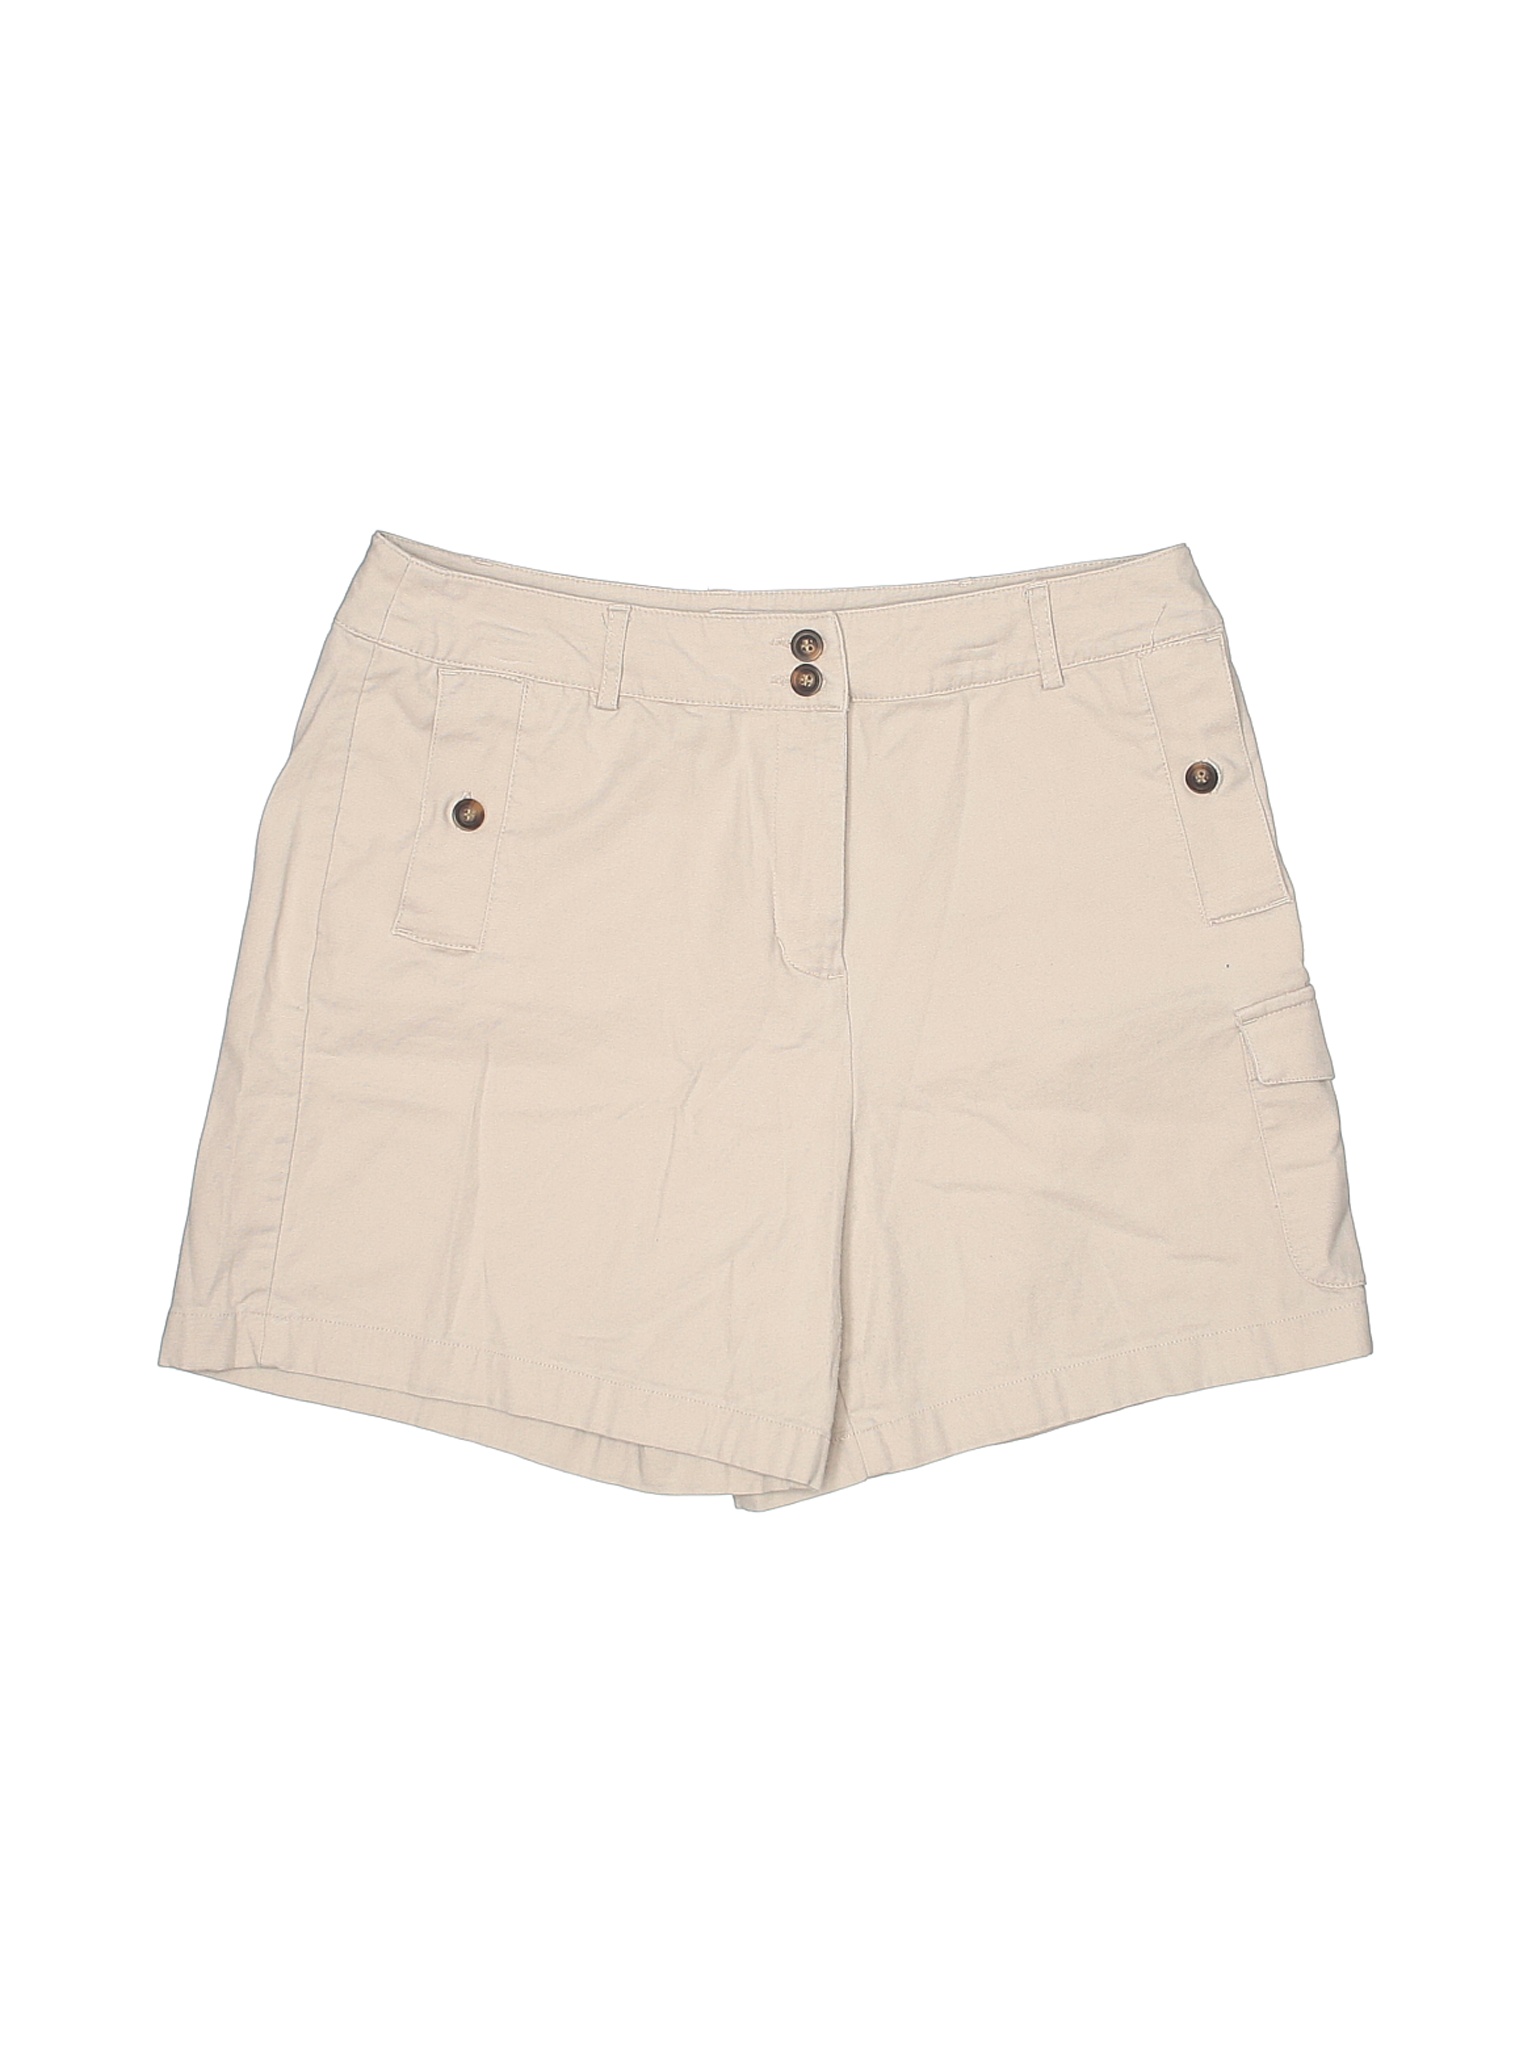 Westbound Women Brown Cargo Shorts 10 | eBay